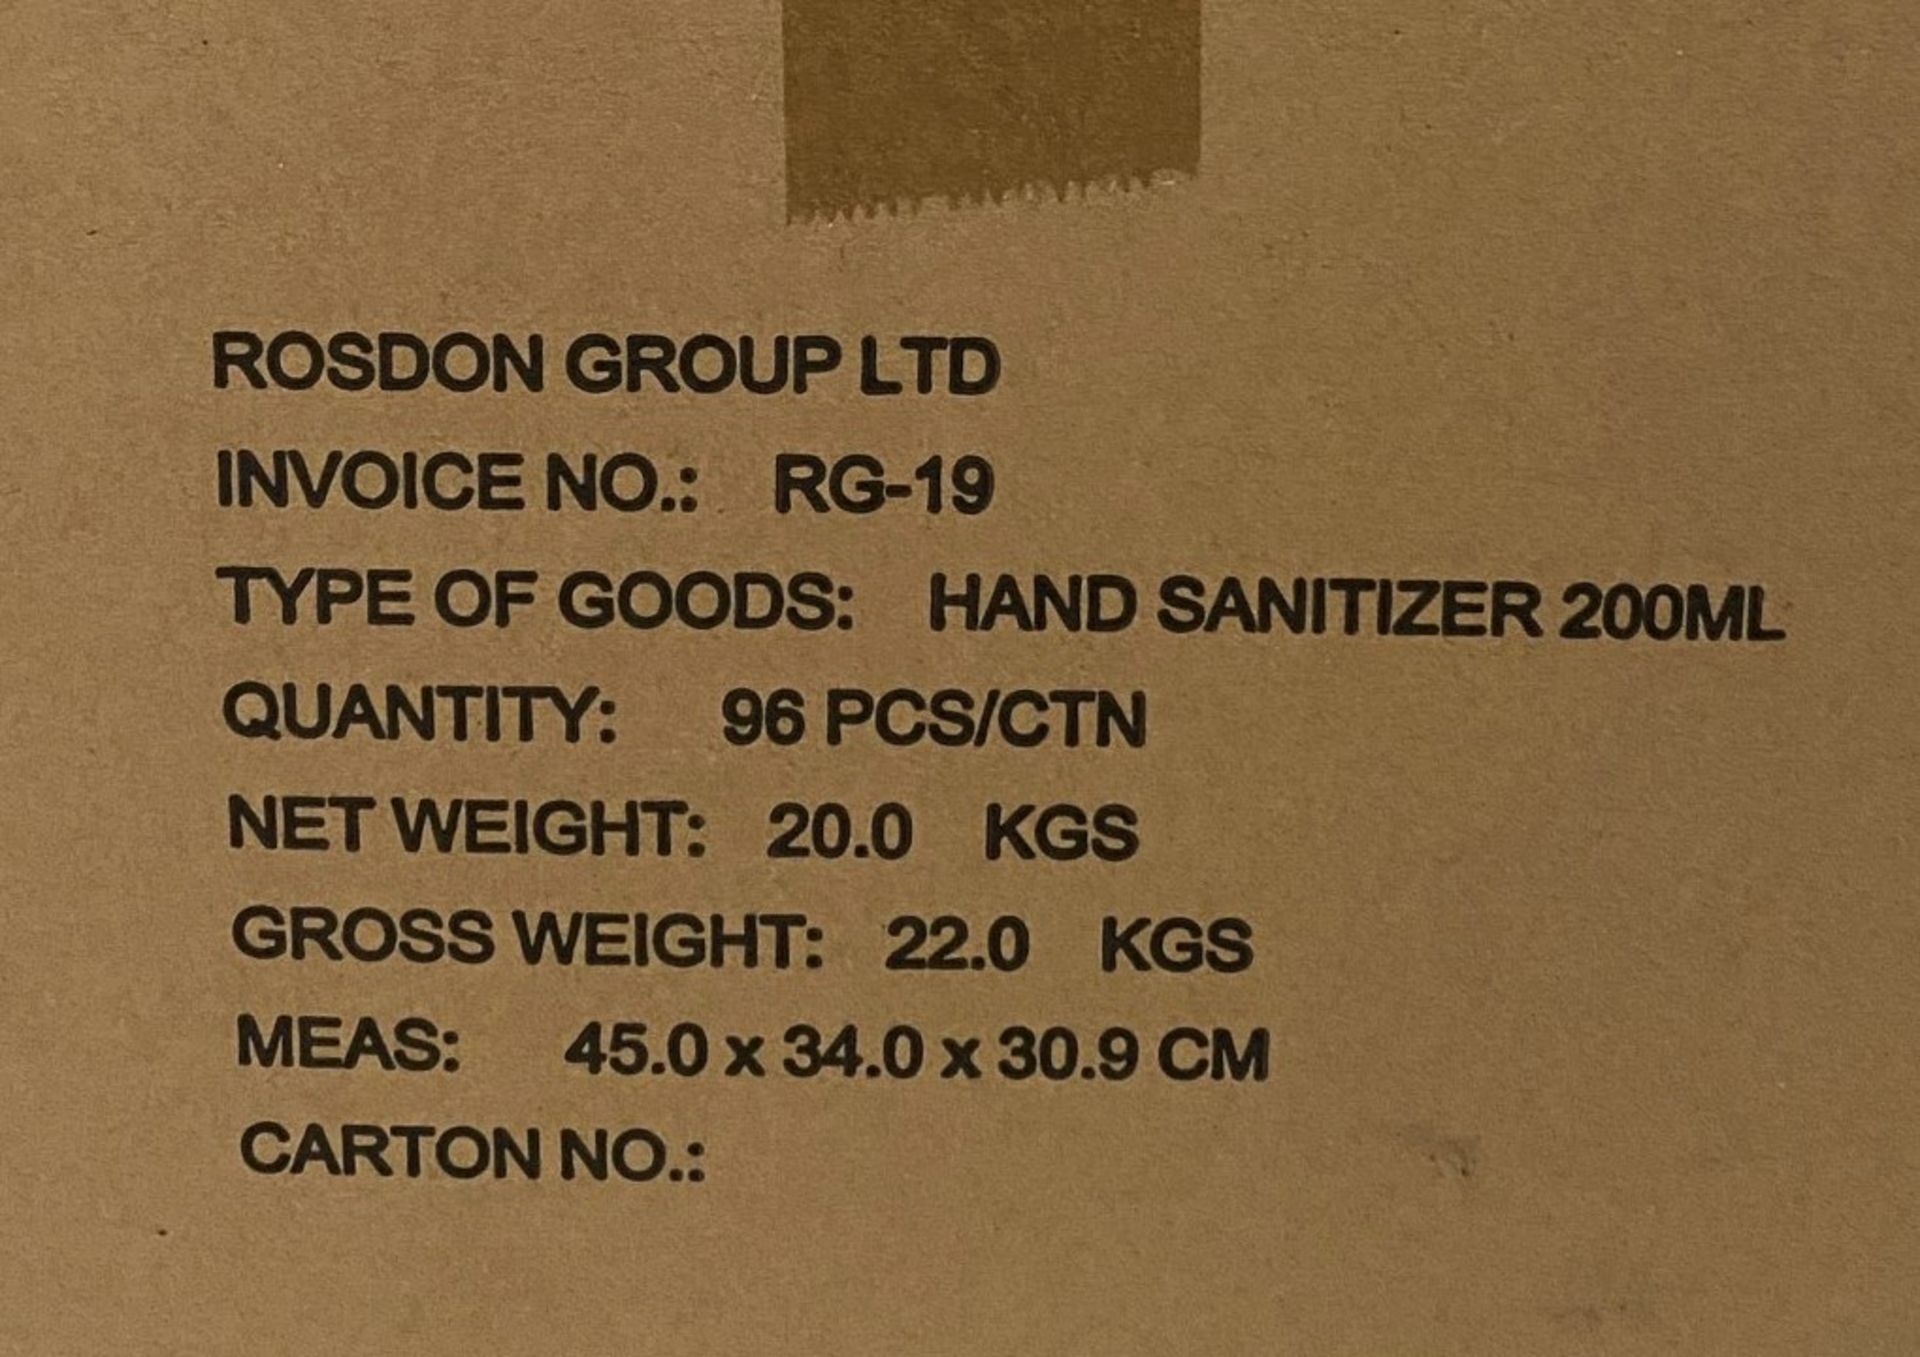 192 x 200ml pump top bottles of Rosdon Group UK hand sanitiser (Unlabelled clear plastic bottles) - - Image 5 of 5